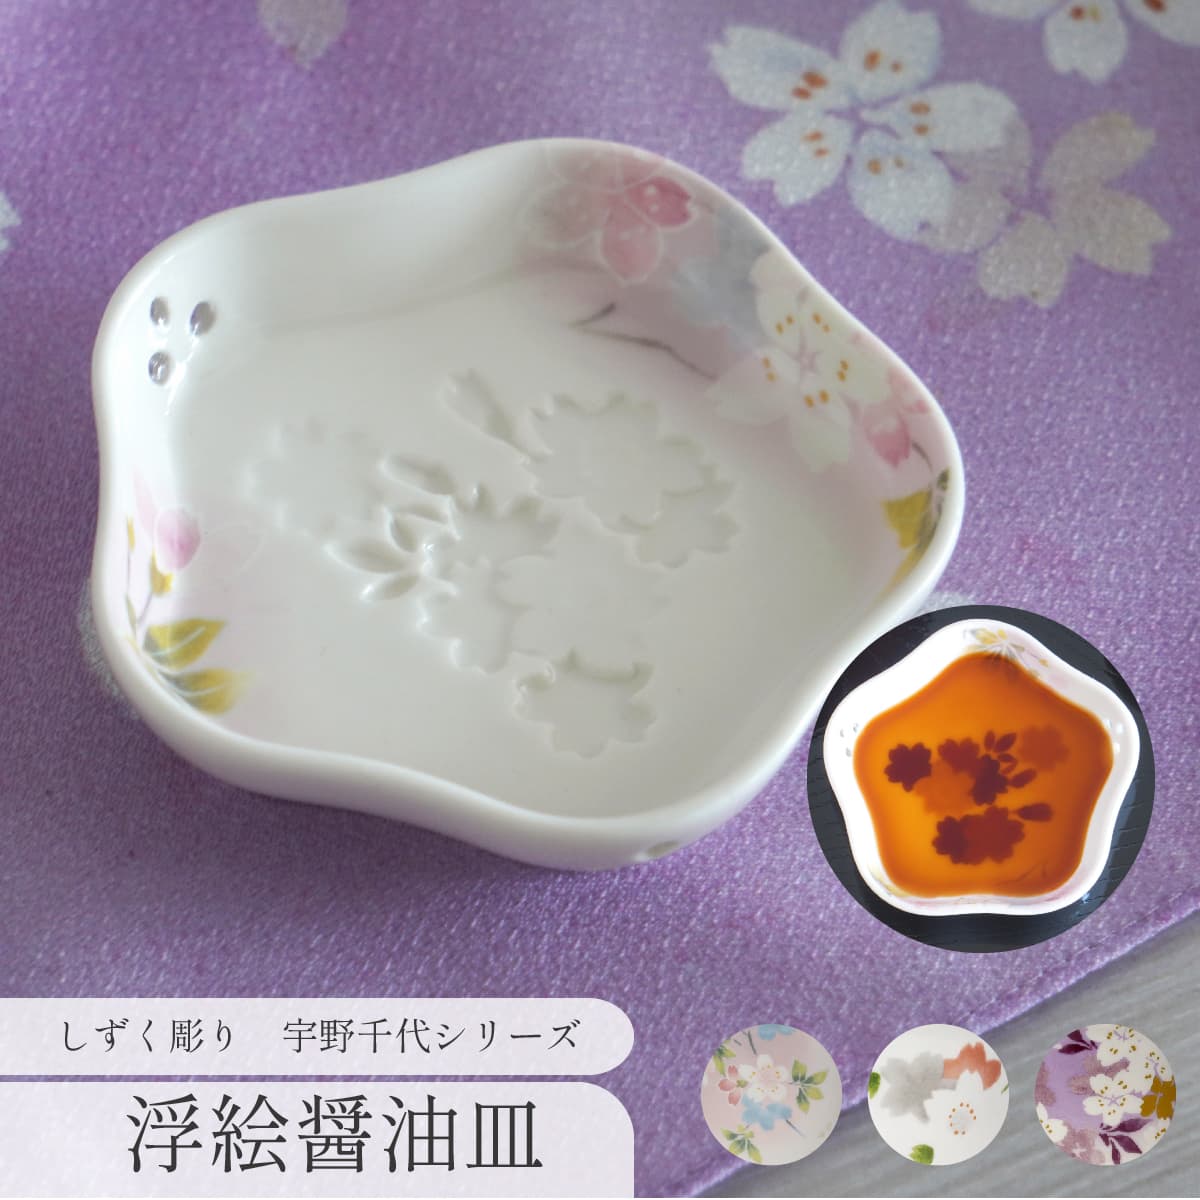 小皿 5cm しずく彫り 宇野千代 桜柄 食器 陶器 蛍手 透かし彫り 来客